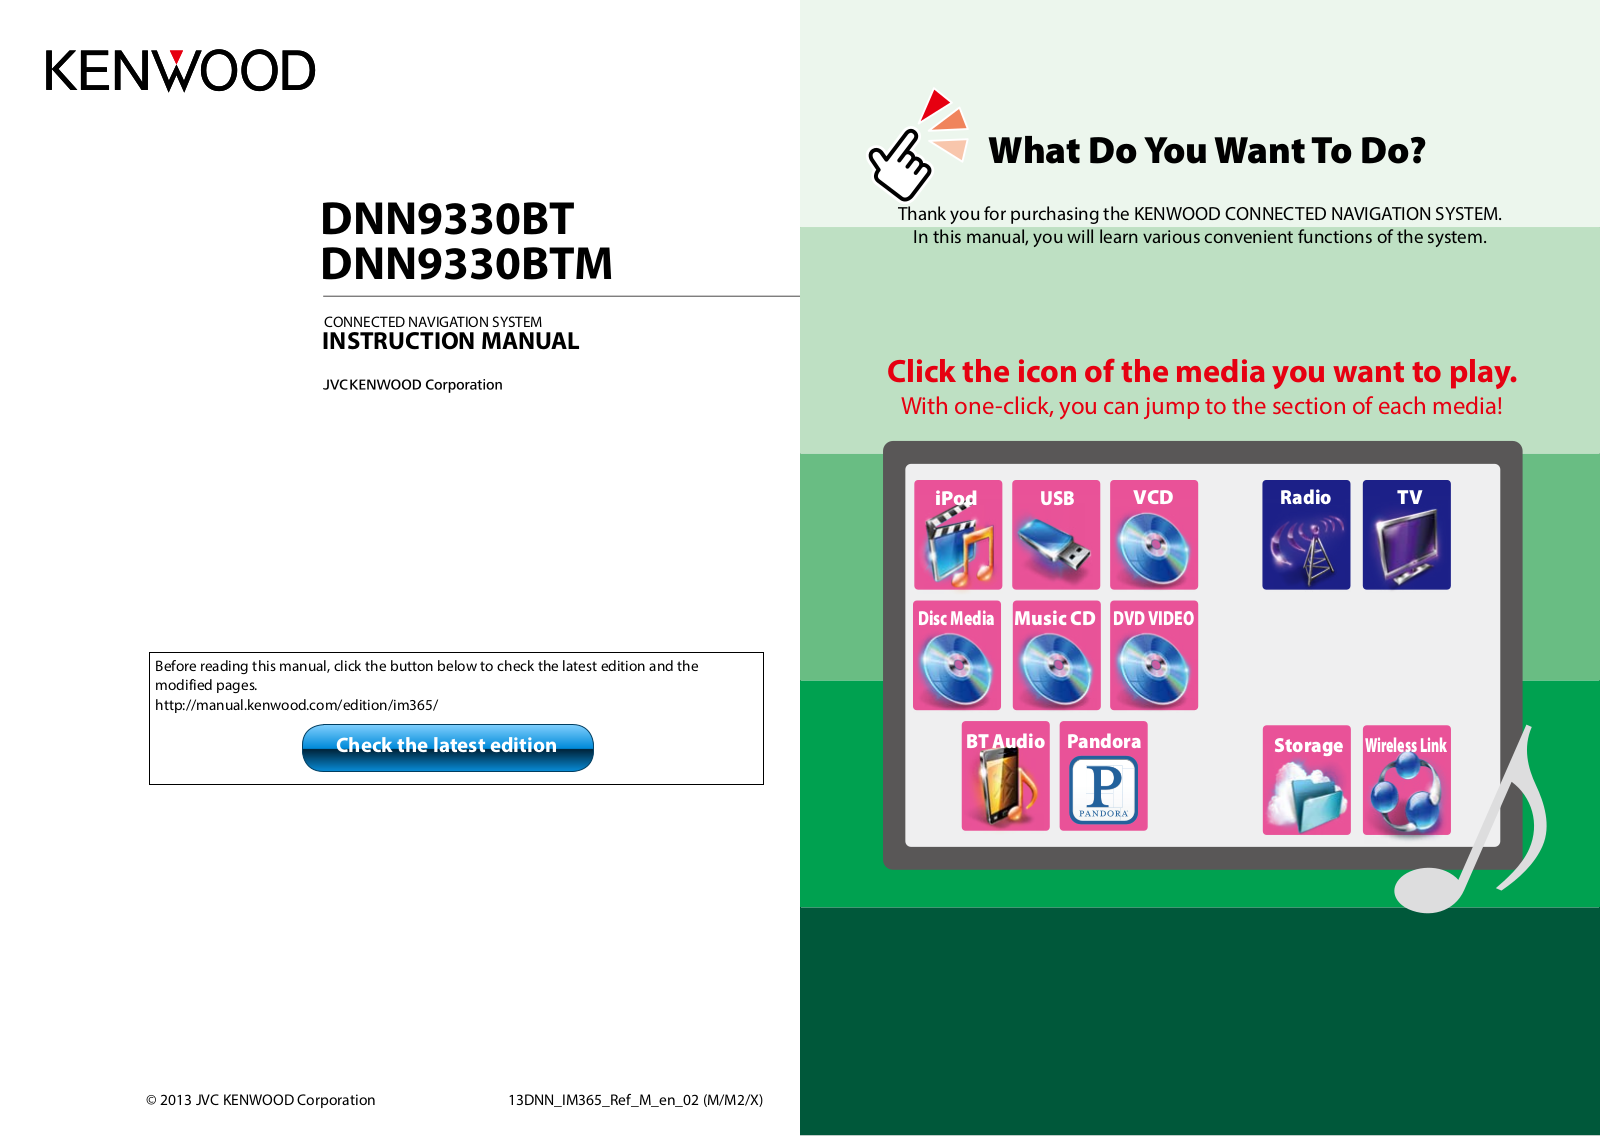 Kenwood DNN9330BTM, DNN9330BT User Manual